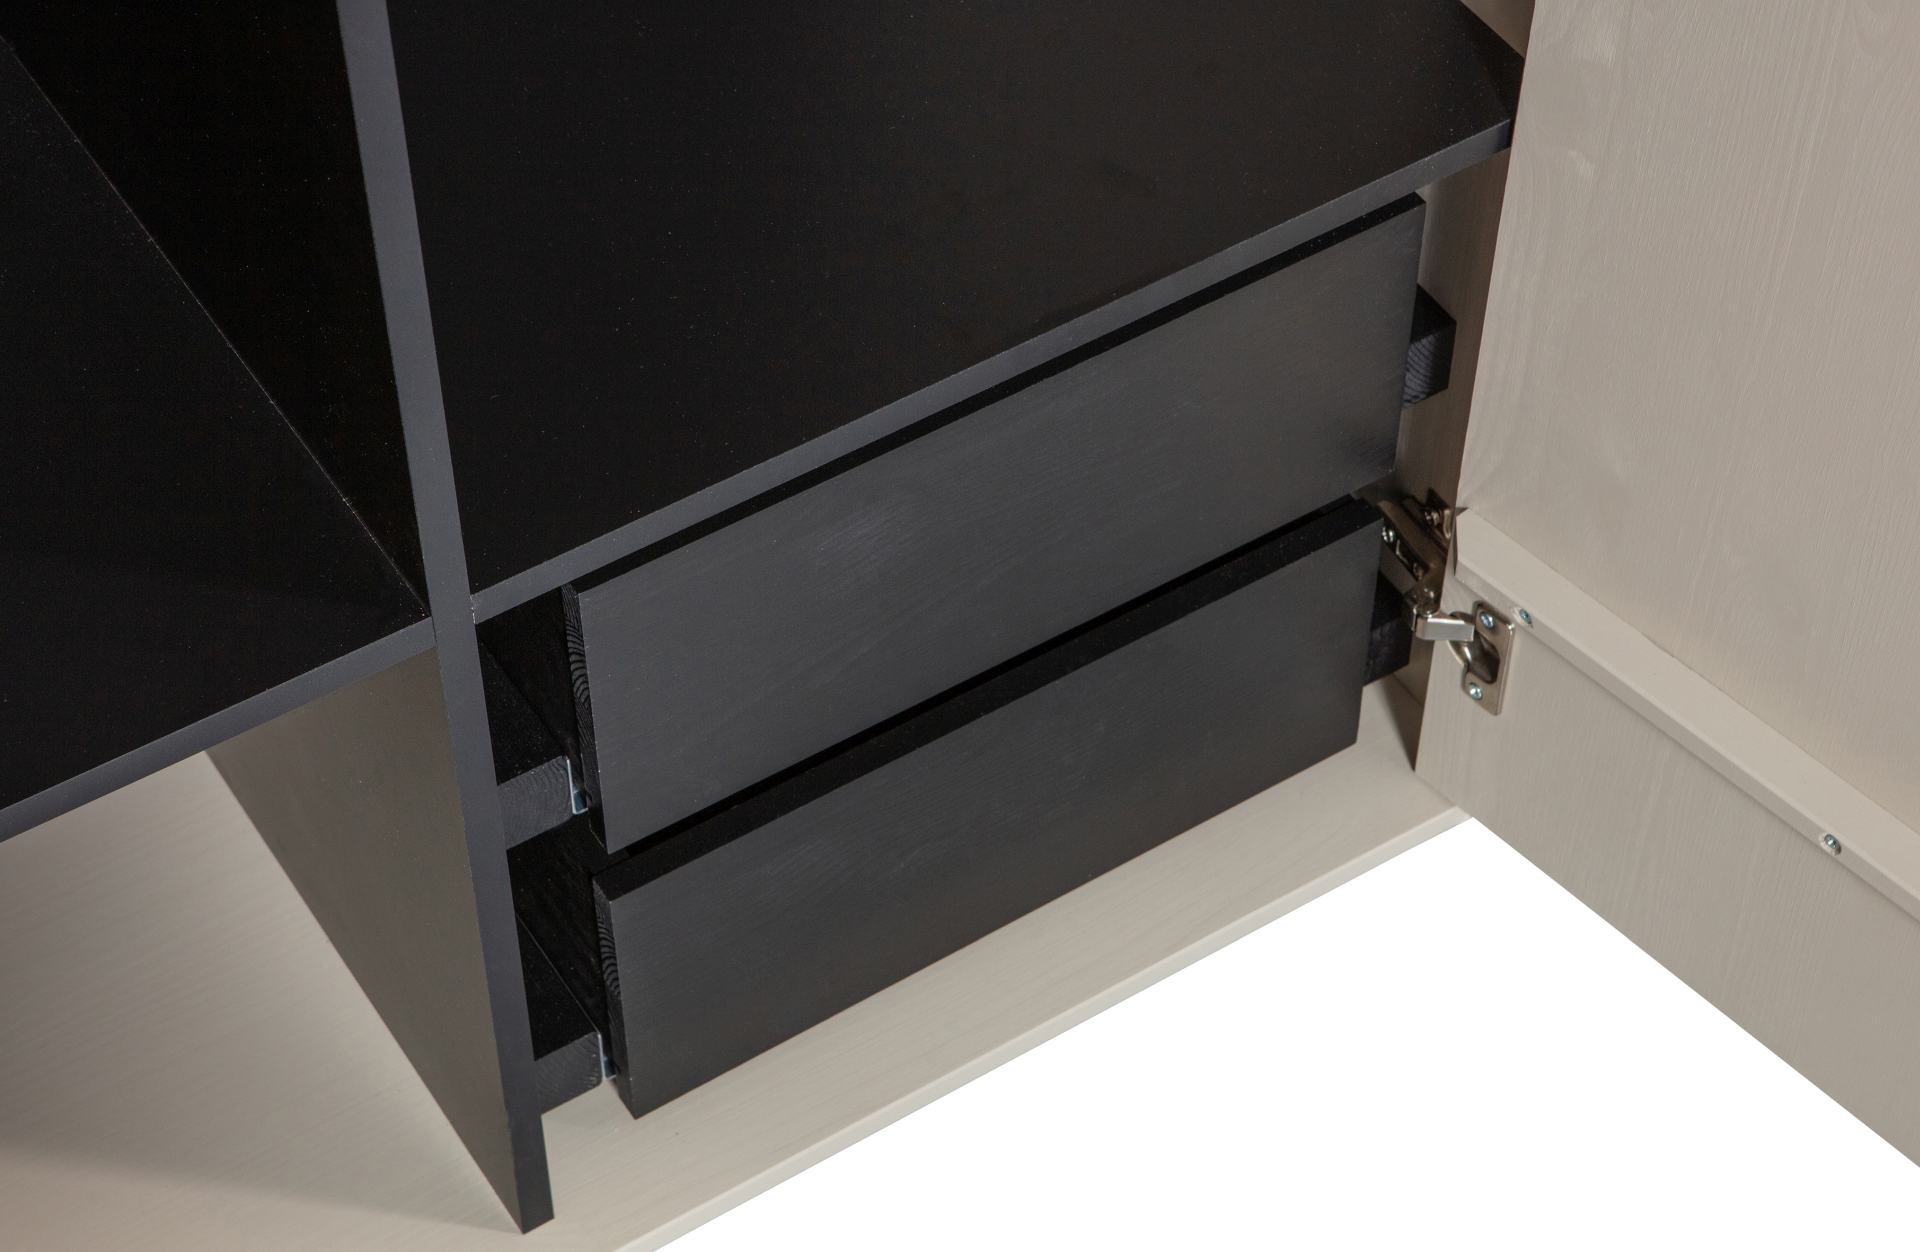 Der Modulschrank Daily Closet überzeugt mit seinem modernen Design. Gefertigt wurde er aus Kiefernholz, welches einen grauen Farbton besitzt. Der Schrank verfügt über zwei Türen und hat eine Größe von 200x100 cm